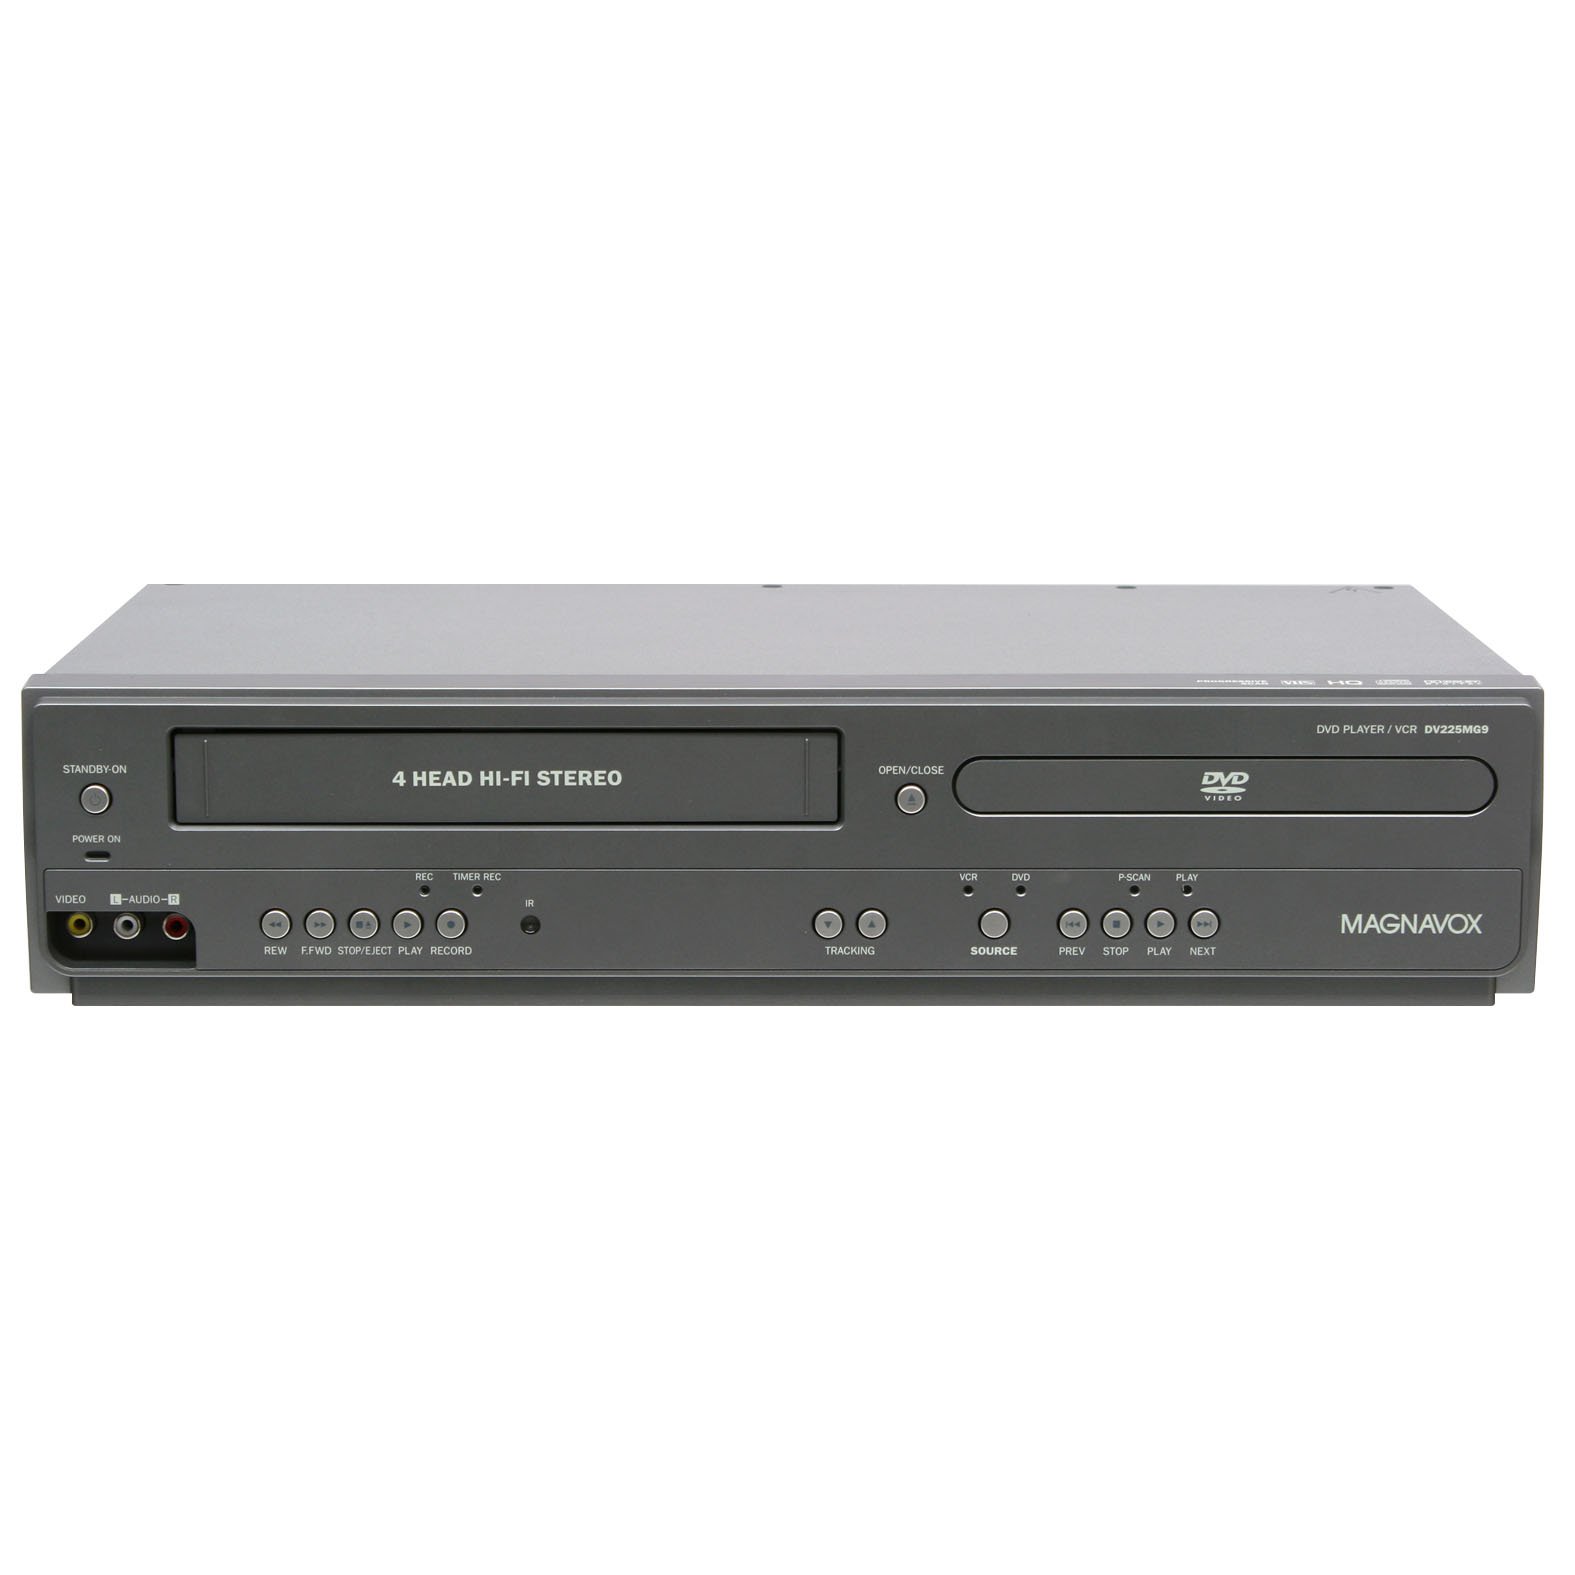  Magnavox DV225MG9 डीवीडी प्लेयर और लाइन-इन रिकॉर्डिंग के साथ 4 हेड हाई-फाई स्टीरियो वीस...